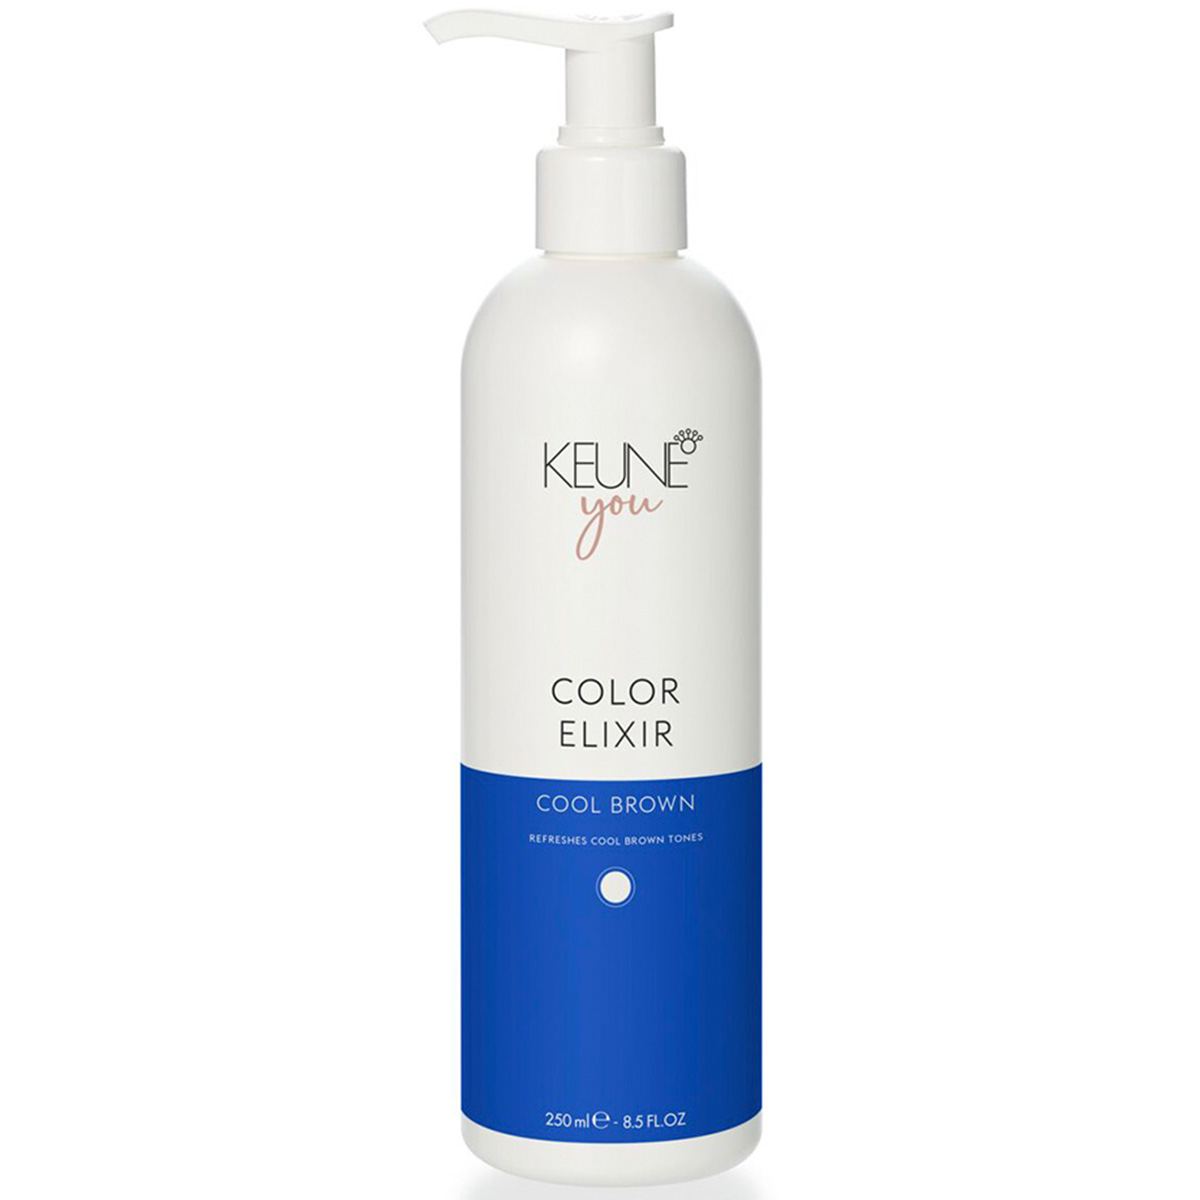 Keune Эликсир для окрашенных и натуральных волос Холодный коричневый Color Elixir Cool Brown, 250 мл (Keune, You)